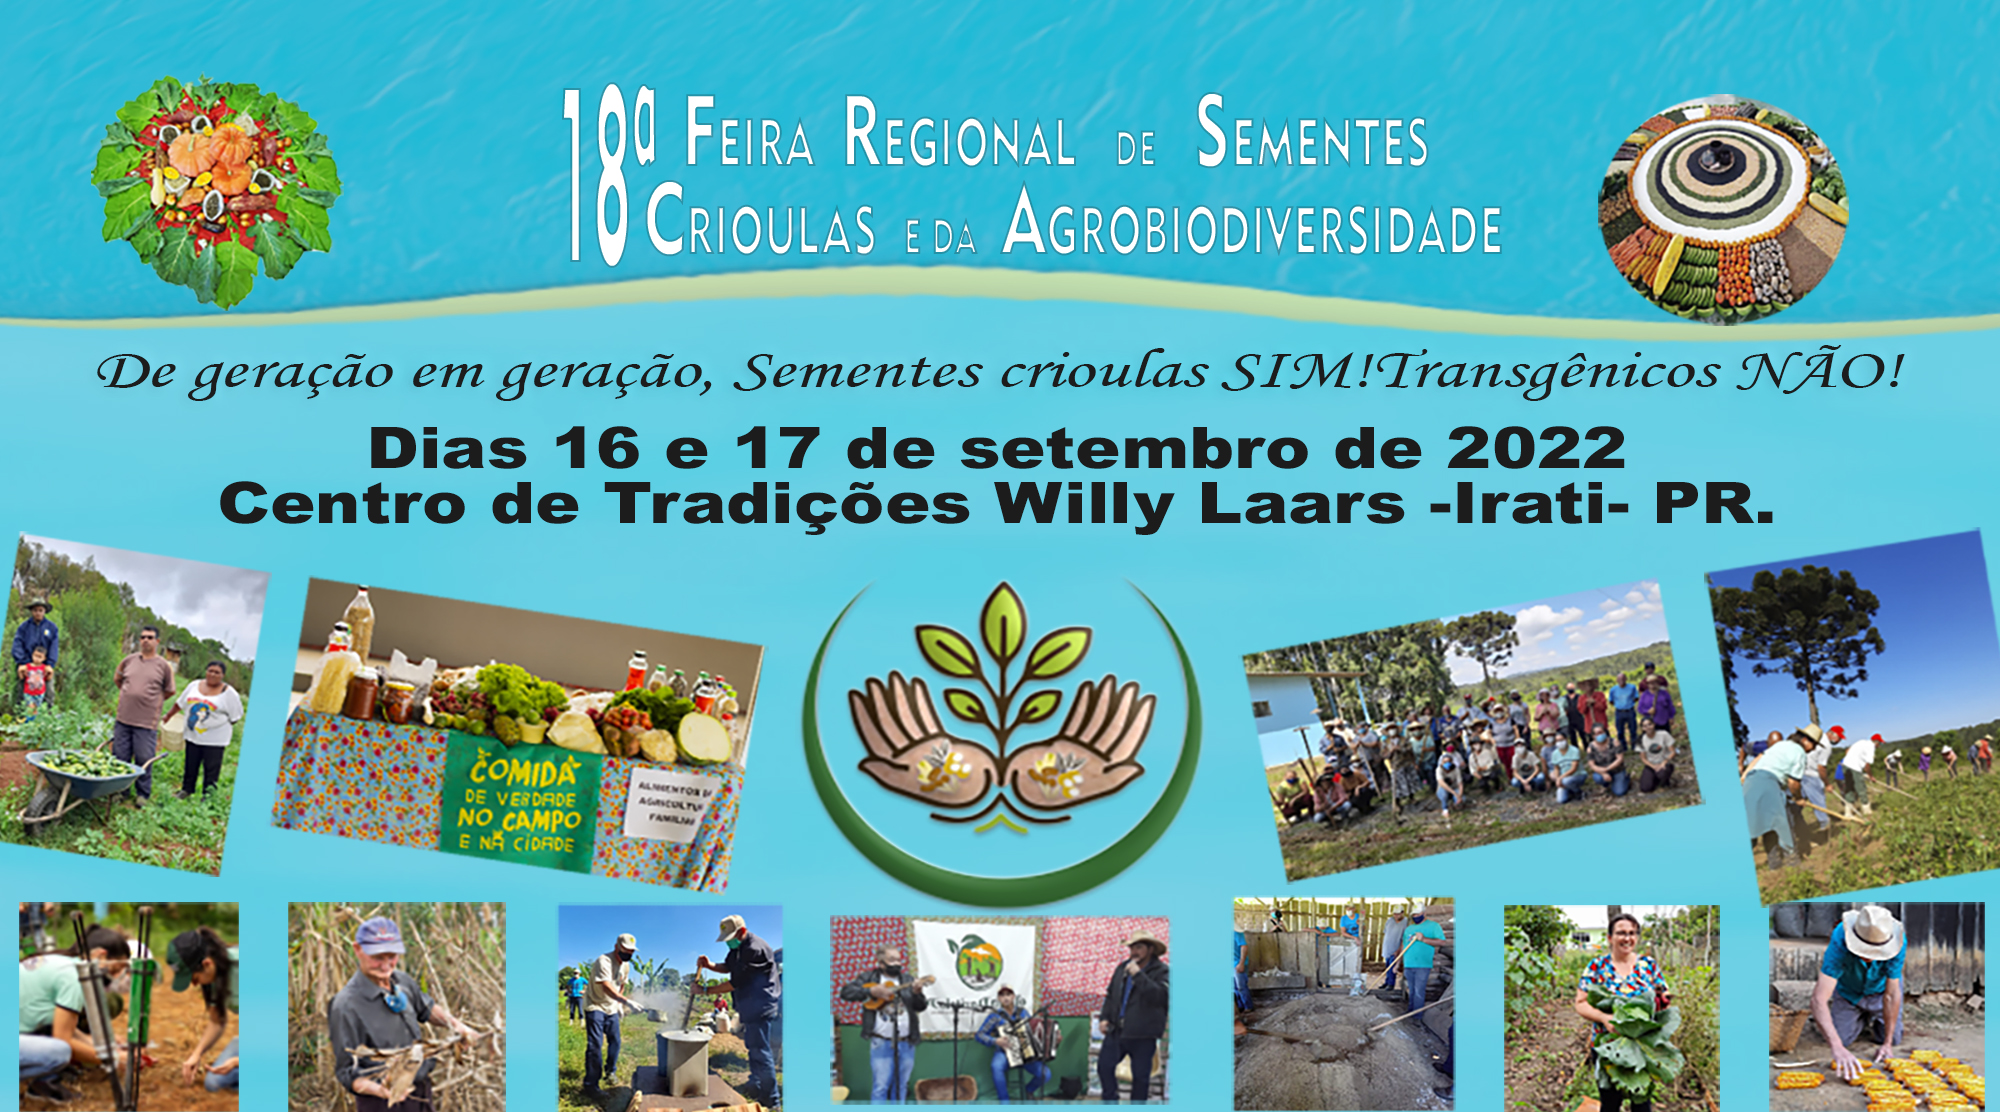 18ª Feira Regional de Sementes Crioulas e da Agrobiodiversidade reunirá mais de 3 mil pessoas em Irati